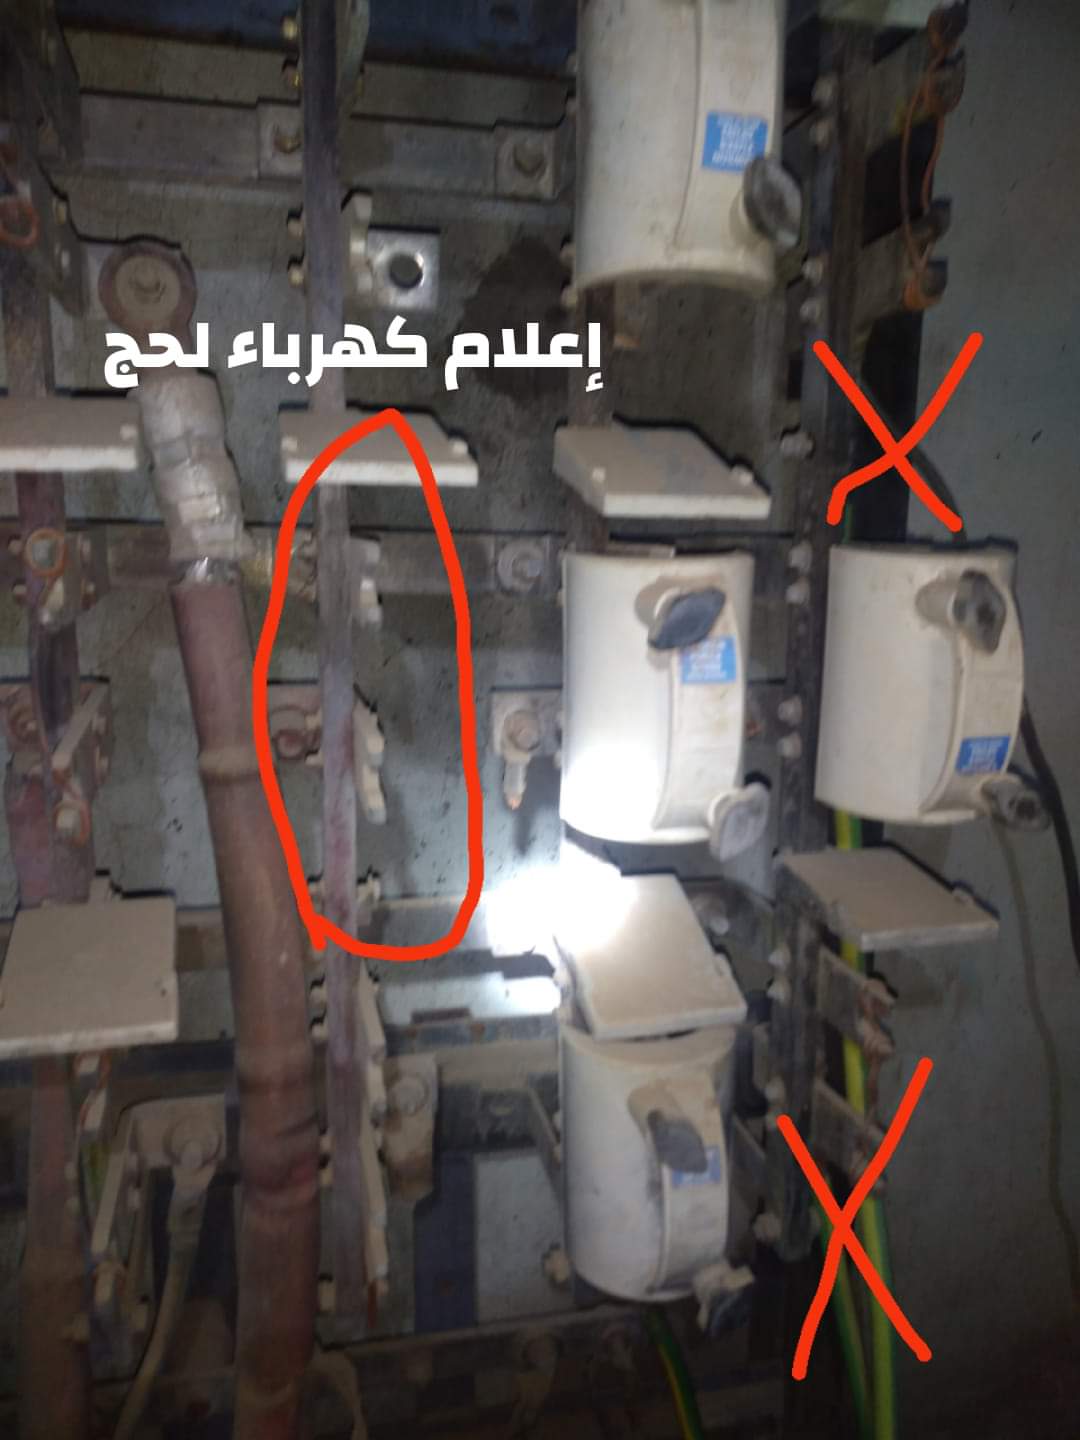 مؤسسة كهرباء محافظة لحج تعلن عن تعرض محطة التوزيع الفرعية بمديرية الحوطة للسرقة